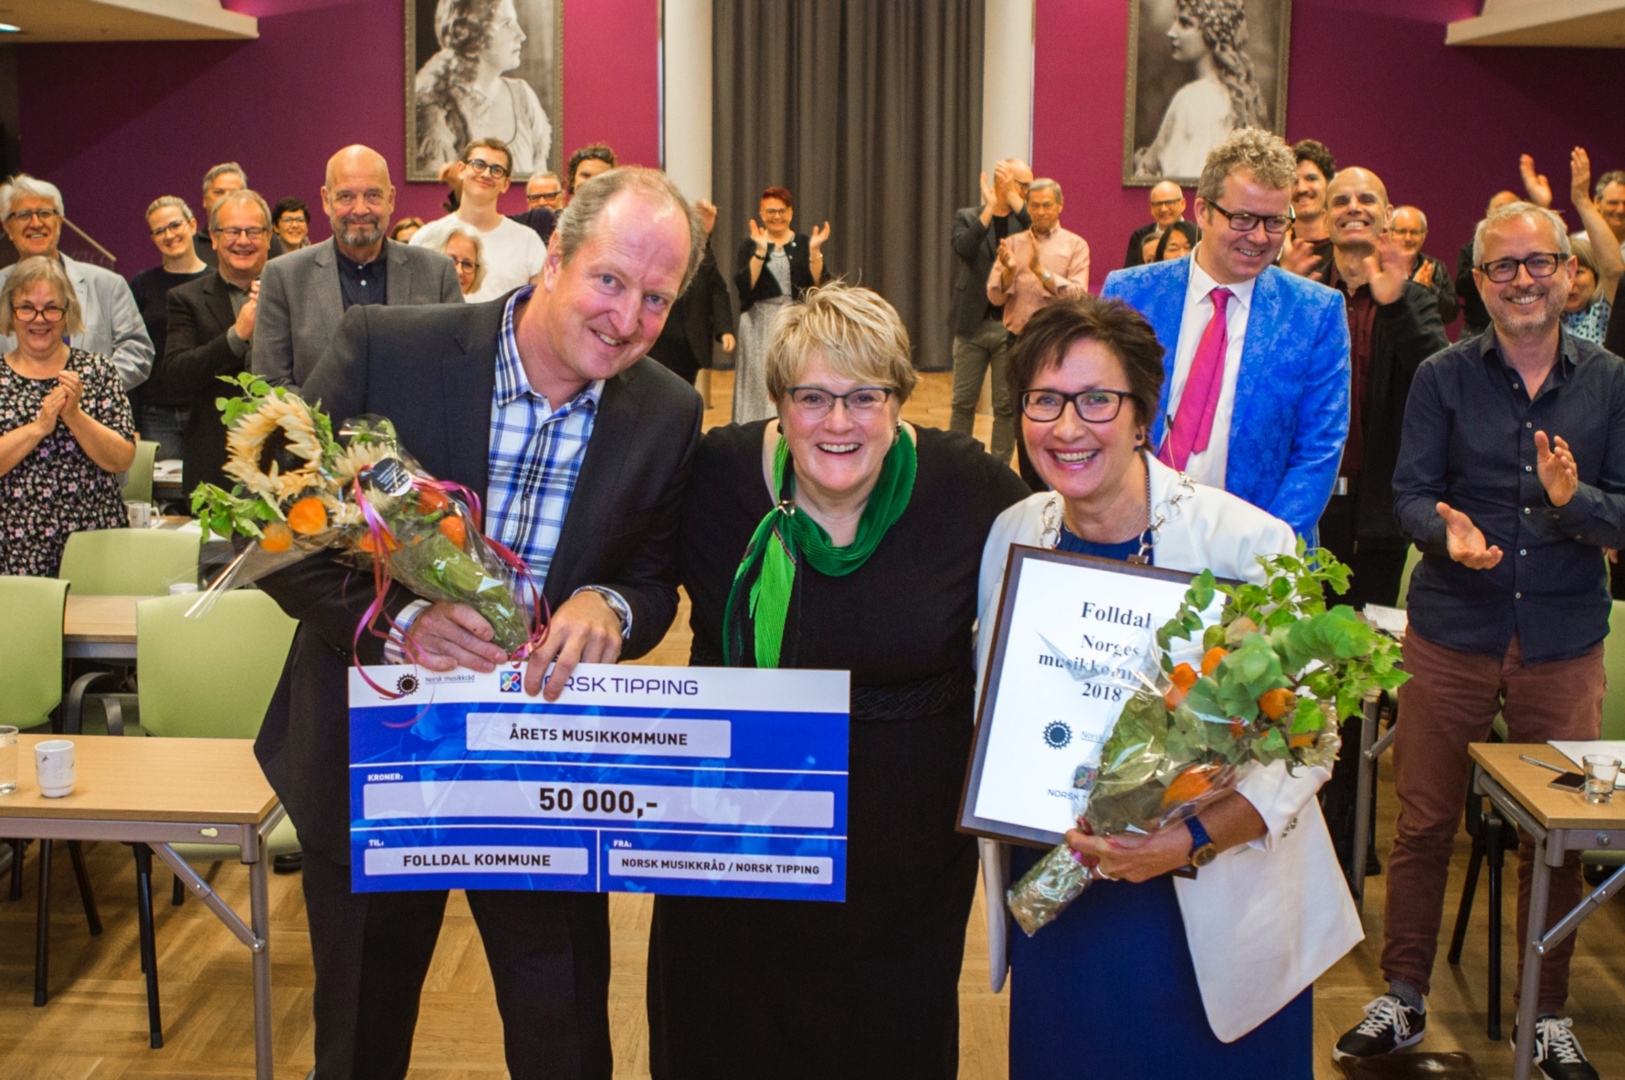 Fikk pris: Kulturminister Trine Skei Grande (i midten) overrakte prisen for årets musikkommune til kulturskolerektor Arne Olav Vårtun og ordfører Hilde Frankmo Tveråen.